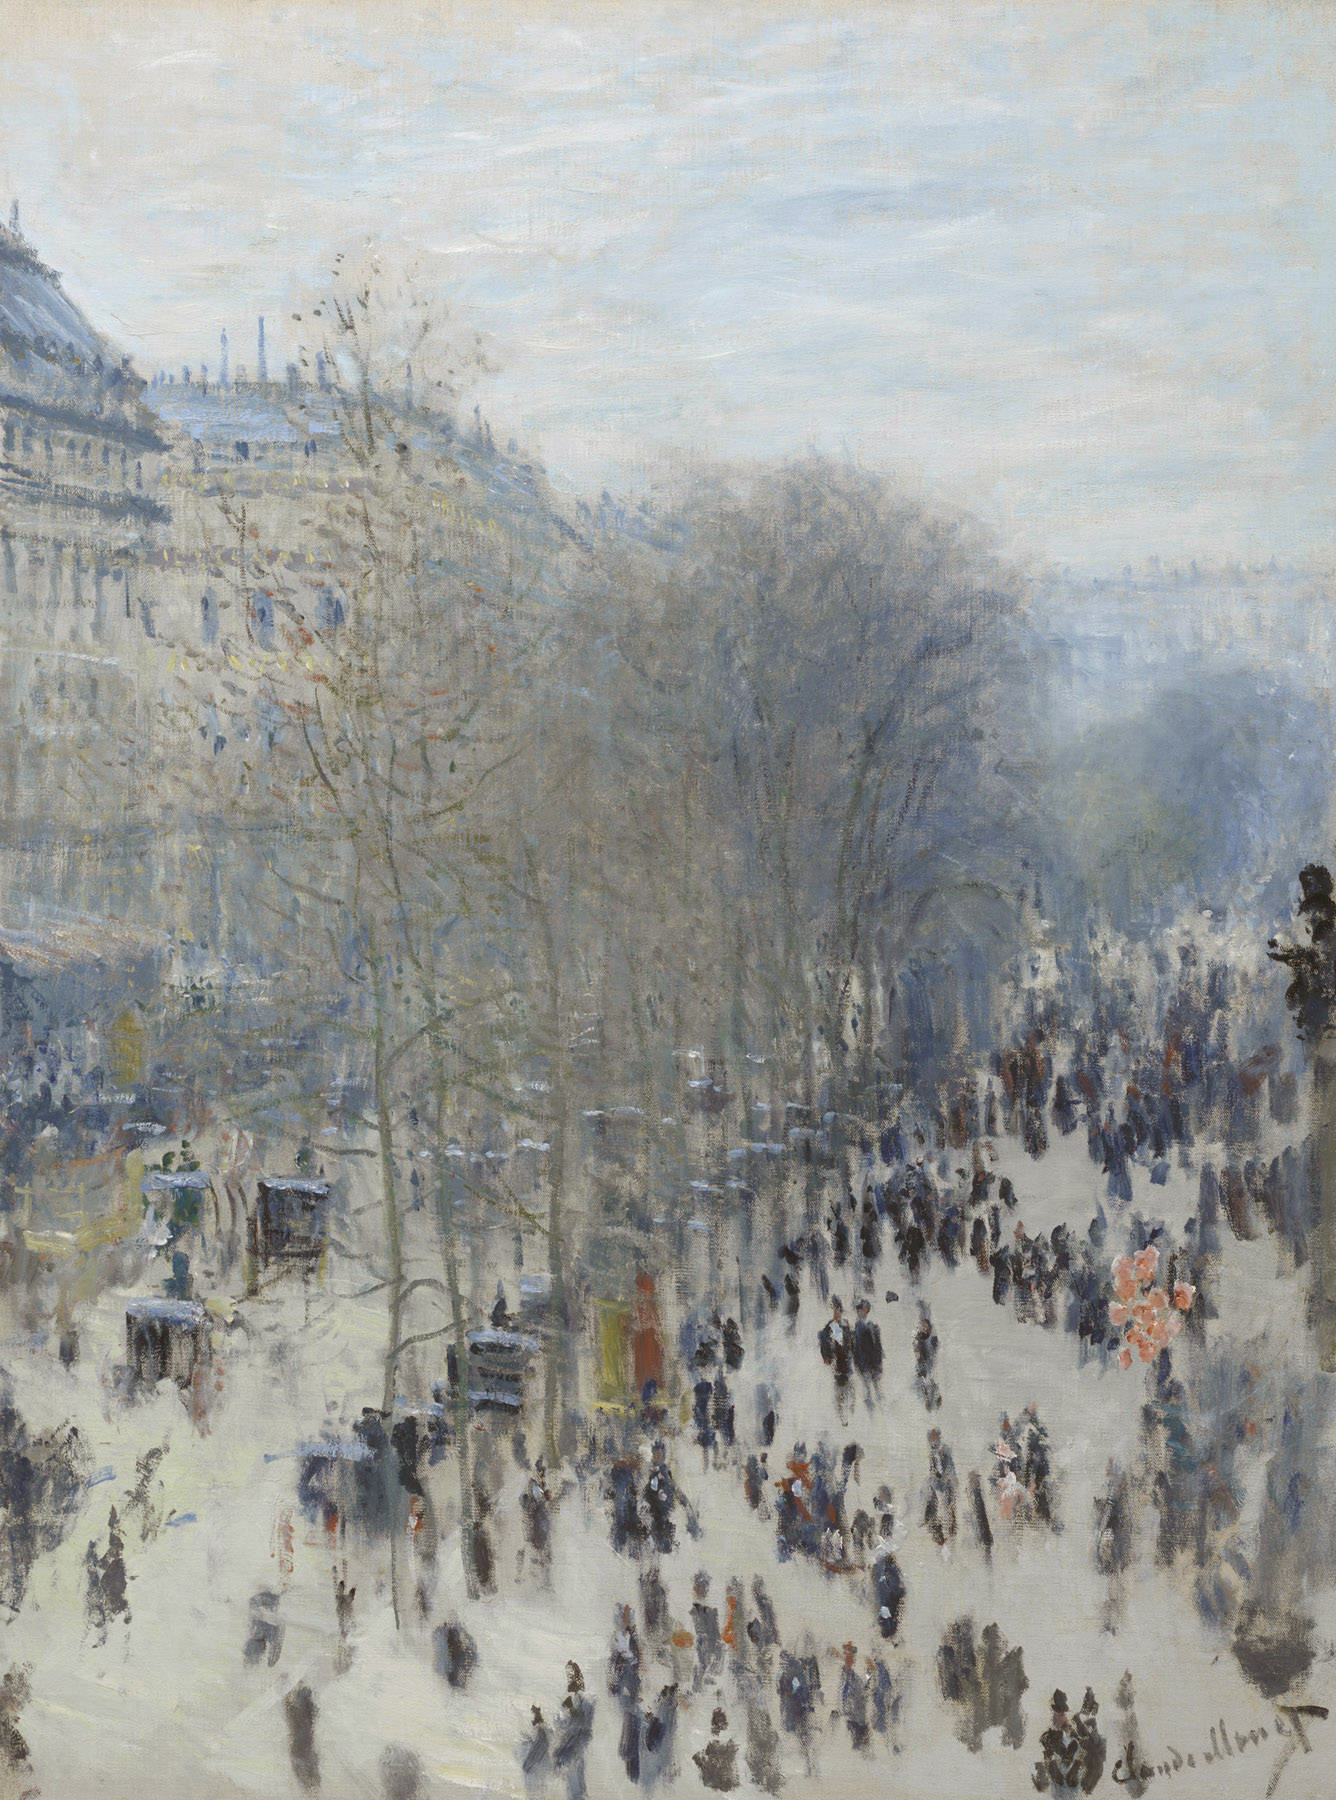 Boulevard des Capucines by Claude Monet - 1873 - 1874 - 60.3 x 80.3 cm 